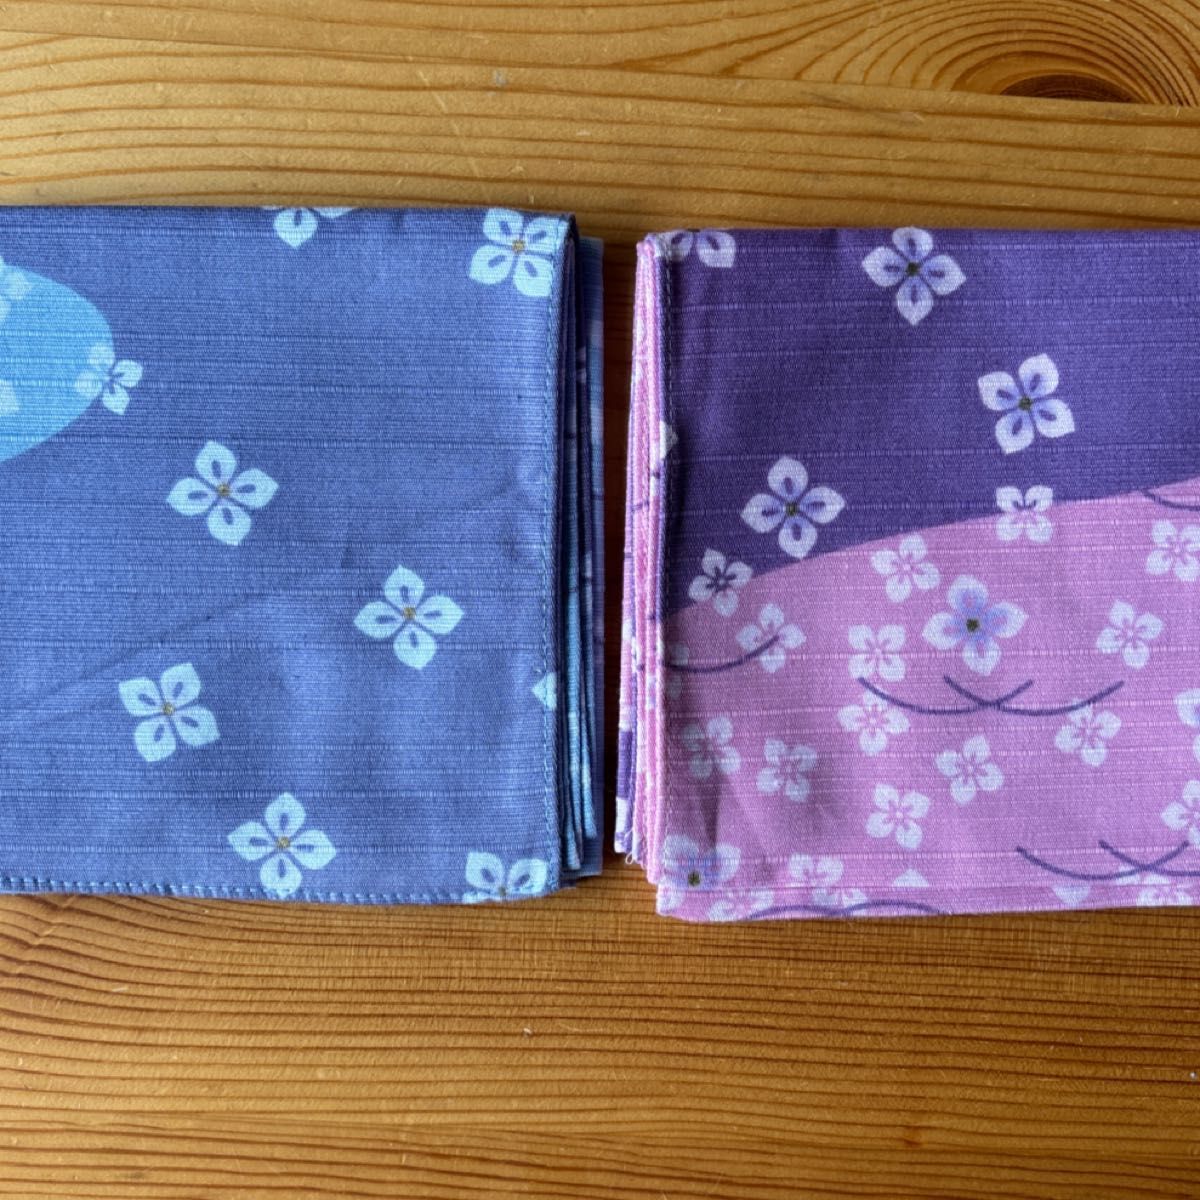 小風呂敷(ハンカチ) 2枚セット   紫陽花柄2色♪         しっかりした綿シャンタン生地    お弁当包みに!!